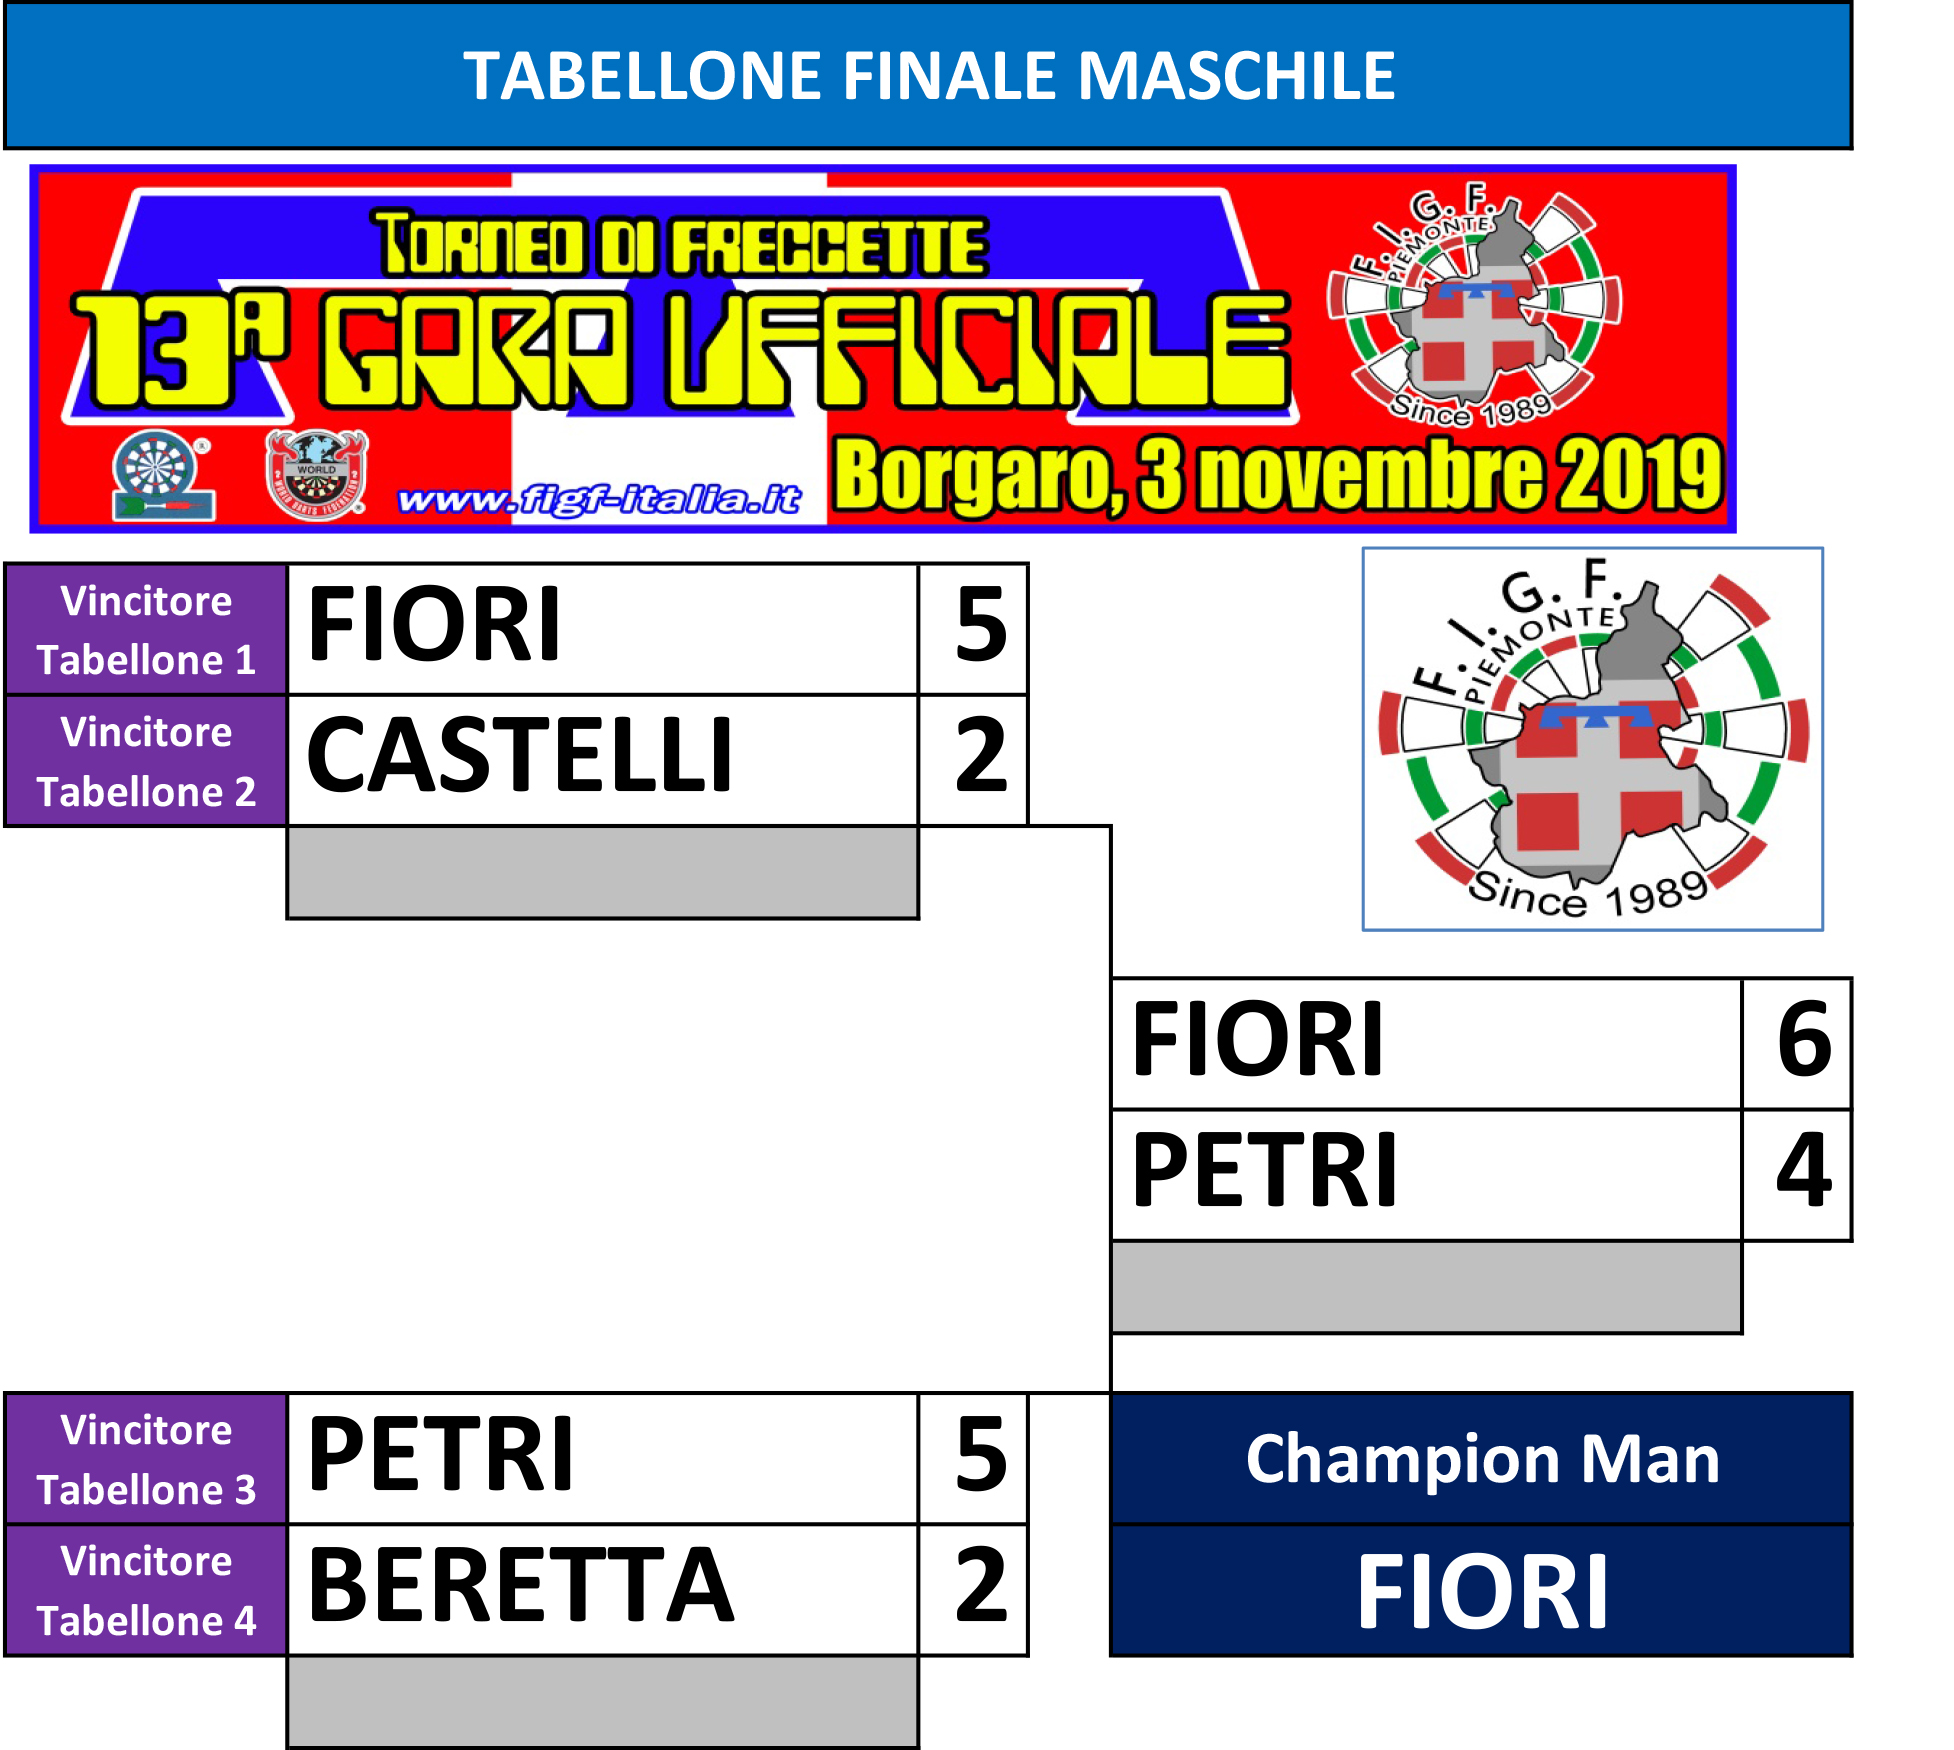 GU Piemonte - Tabellone finale maschile